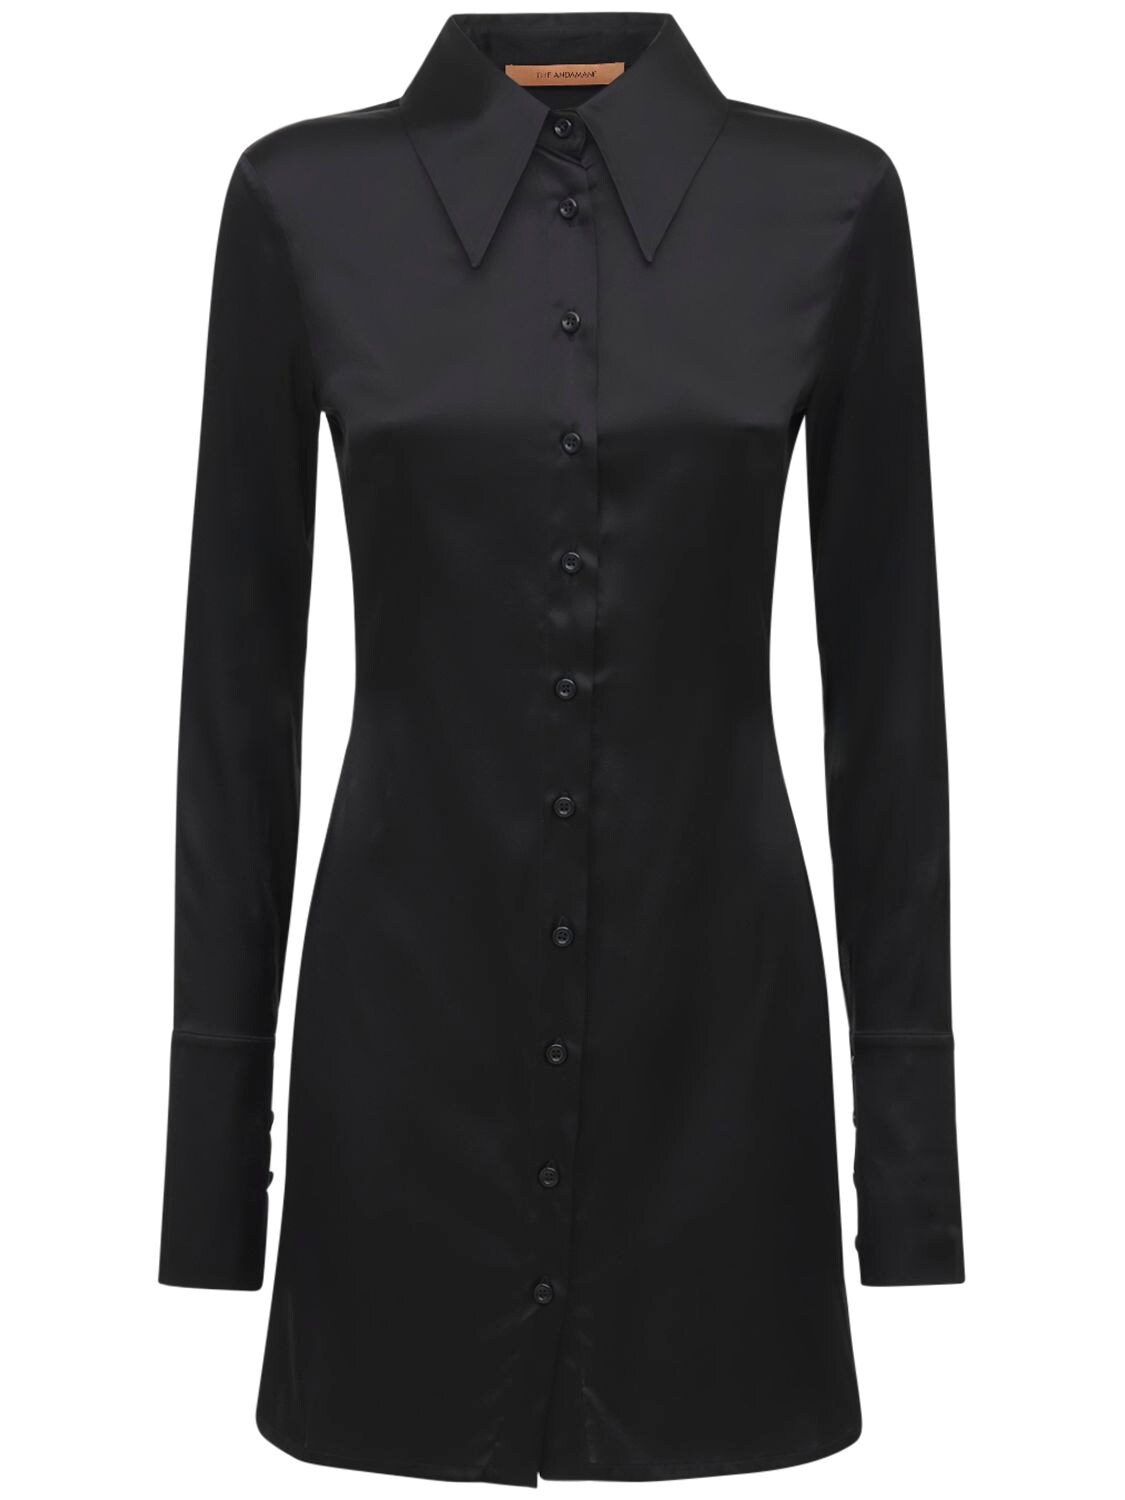 Where to buy Ginevra Silk Satin Shirt Mini Dress 74IXJF004-QkxBQ0s1 ...